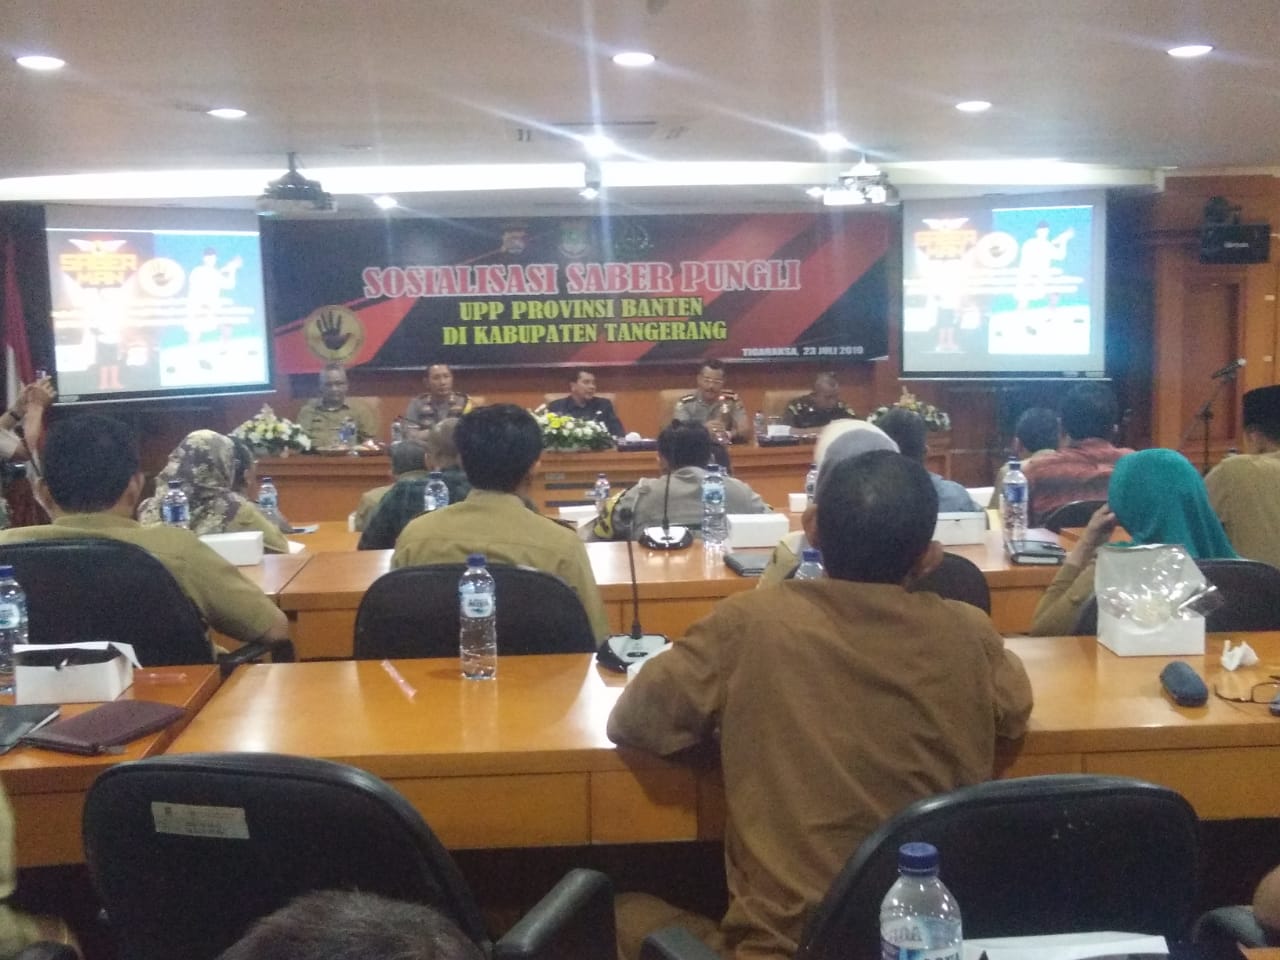 Sosialisasi saber pungli yang digelar UPP Provinsi Banten.(don)